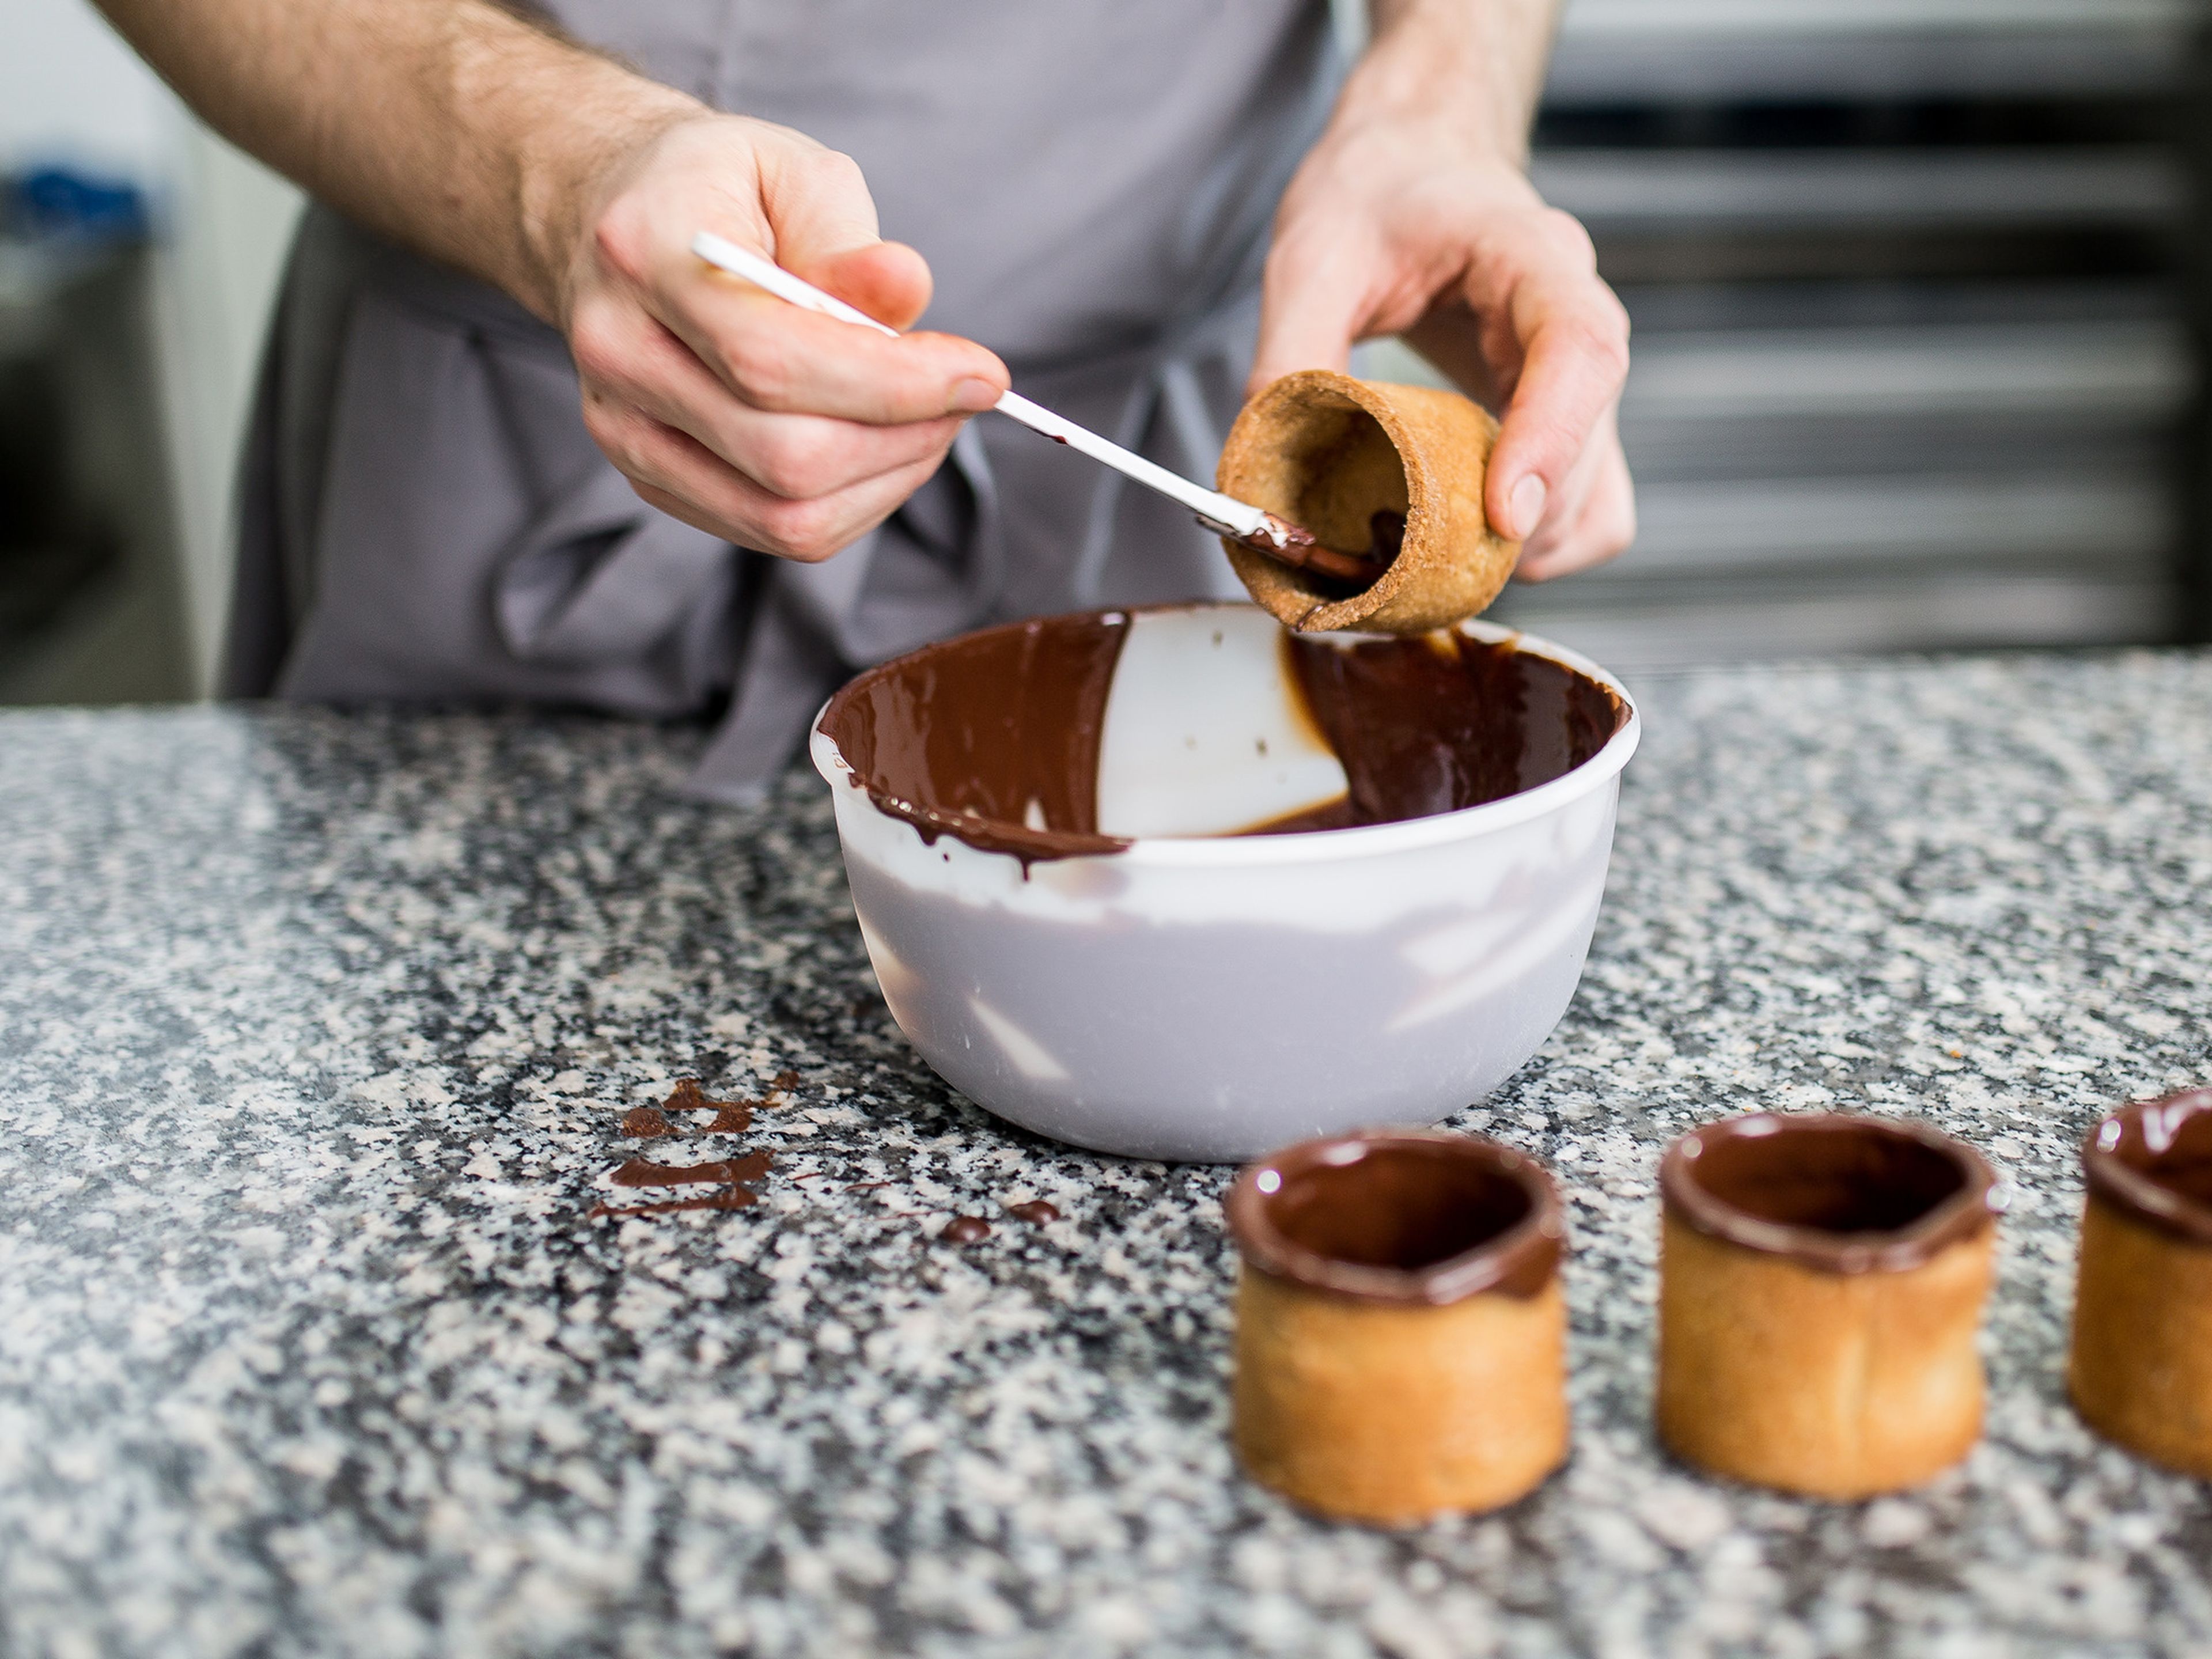 Sobald die Schokolade auf 32°C abgekühlt ist, das Innere der Cookie Cups zweimal damit glasieren. Für den Rand jeden Cup leicht in die Schokolade tauchen und die überschüssige Schokolade abtropfen lassen. Die Cups nach Belieben direkt mit Schokoladenstreuseln oder gehackten Mandeln verzieren. Sobald die Schokolade ausgehärtet ist kann der Rand auch mit essbarem Goldstaub verziert werden. Für ca. 20 Min. im Kühlschrank kaltstellen.